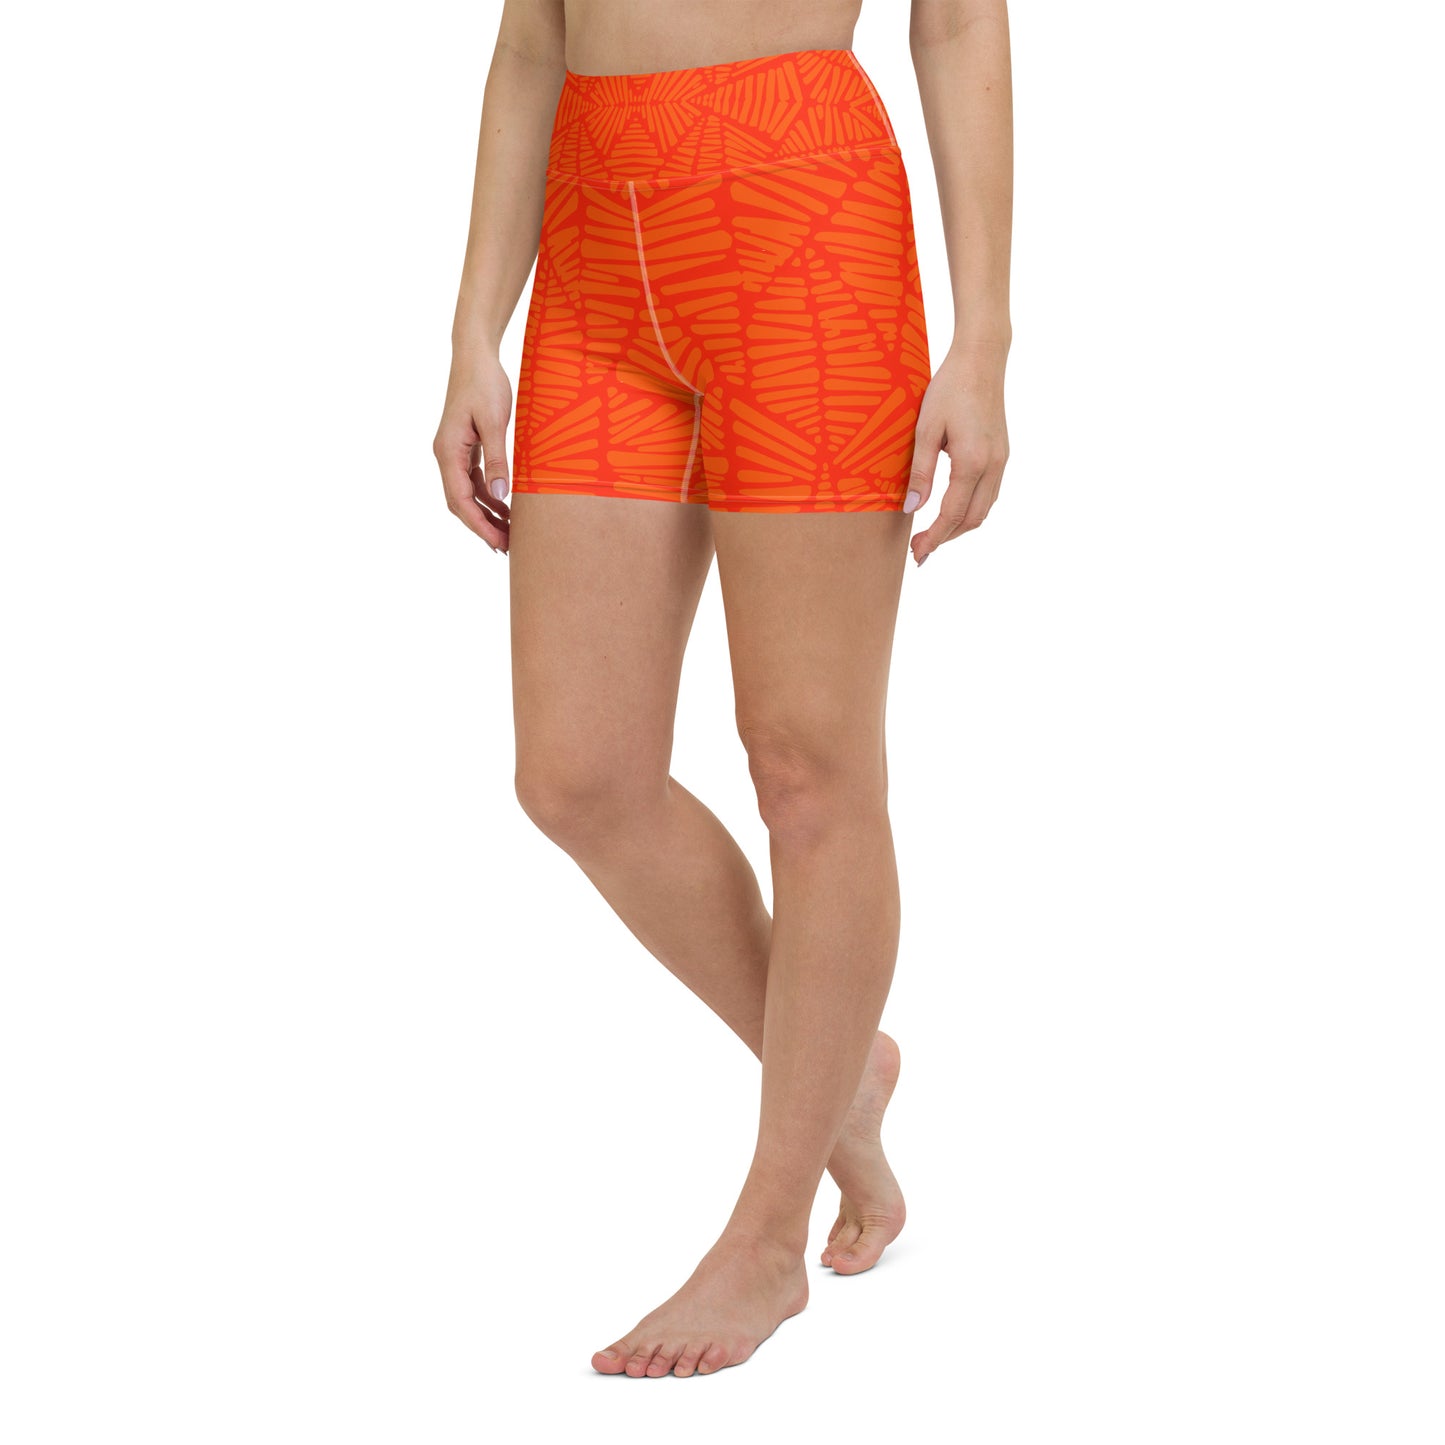 Blood Orange High Waisted Shorts